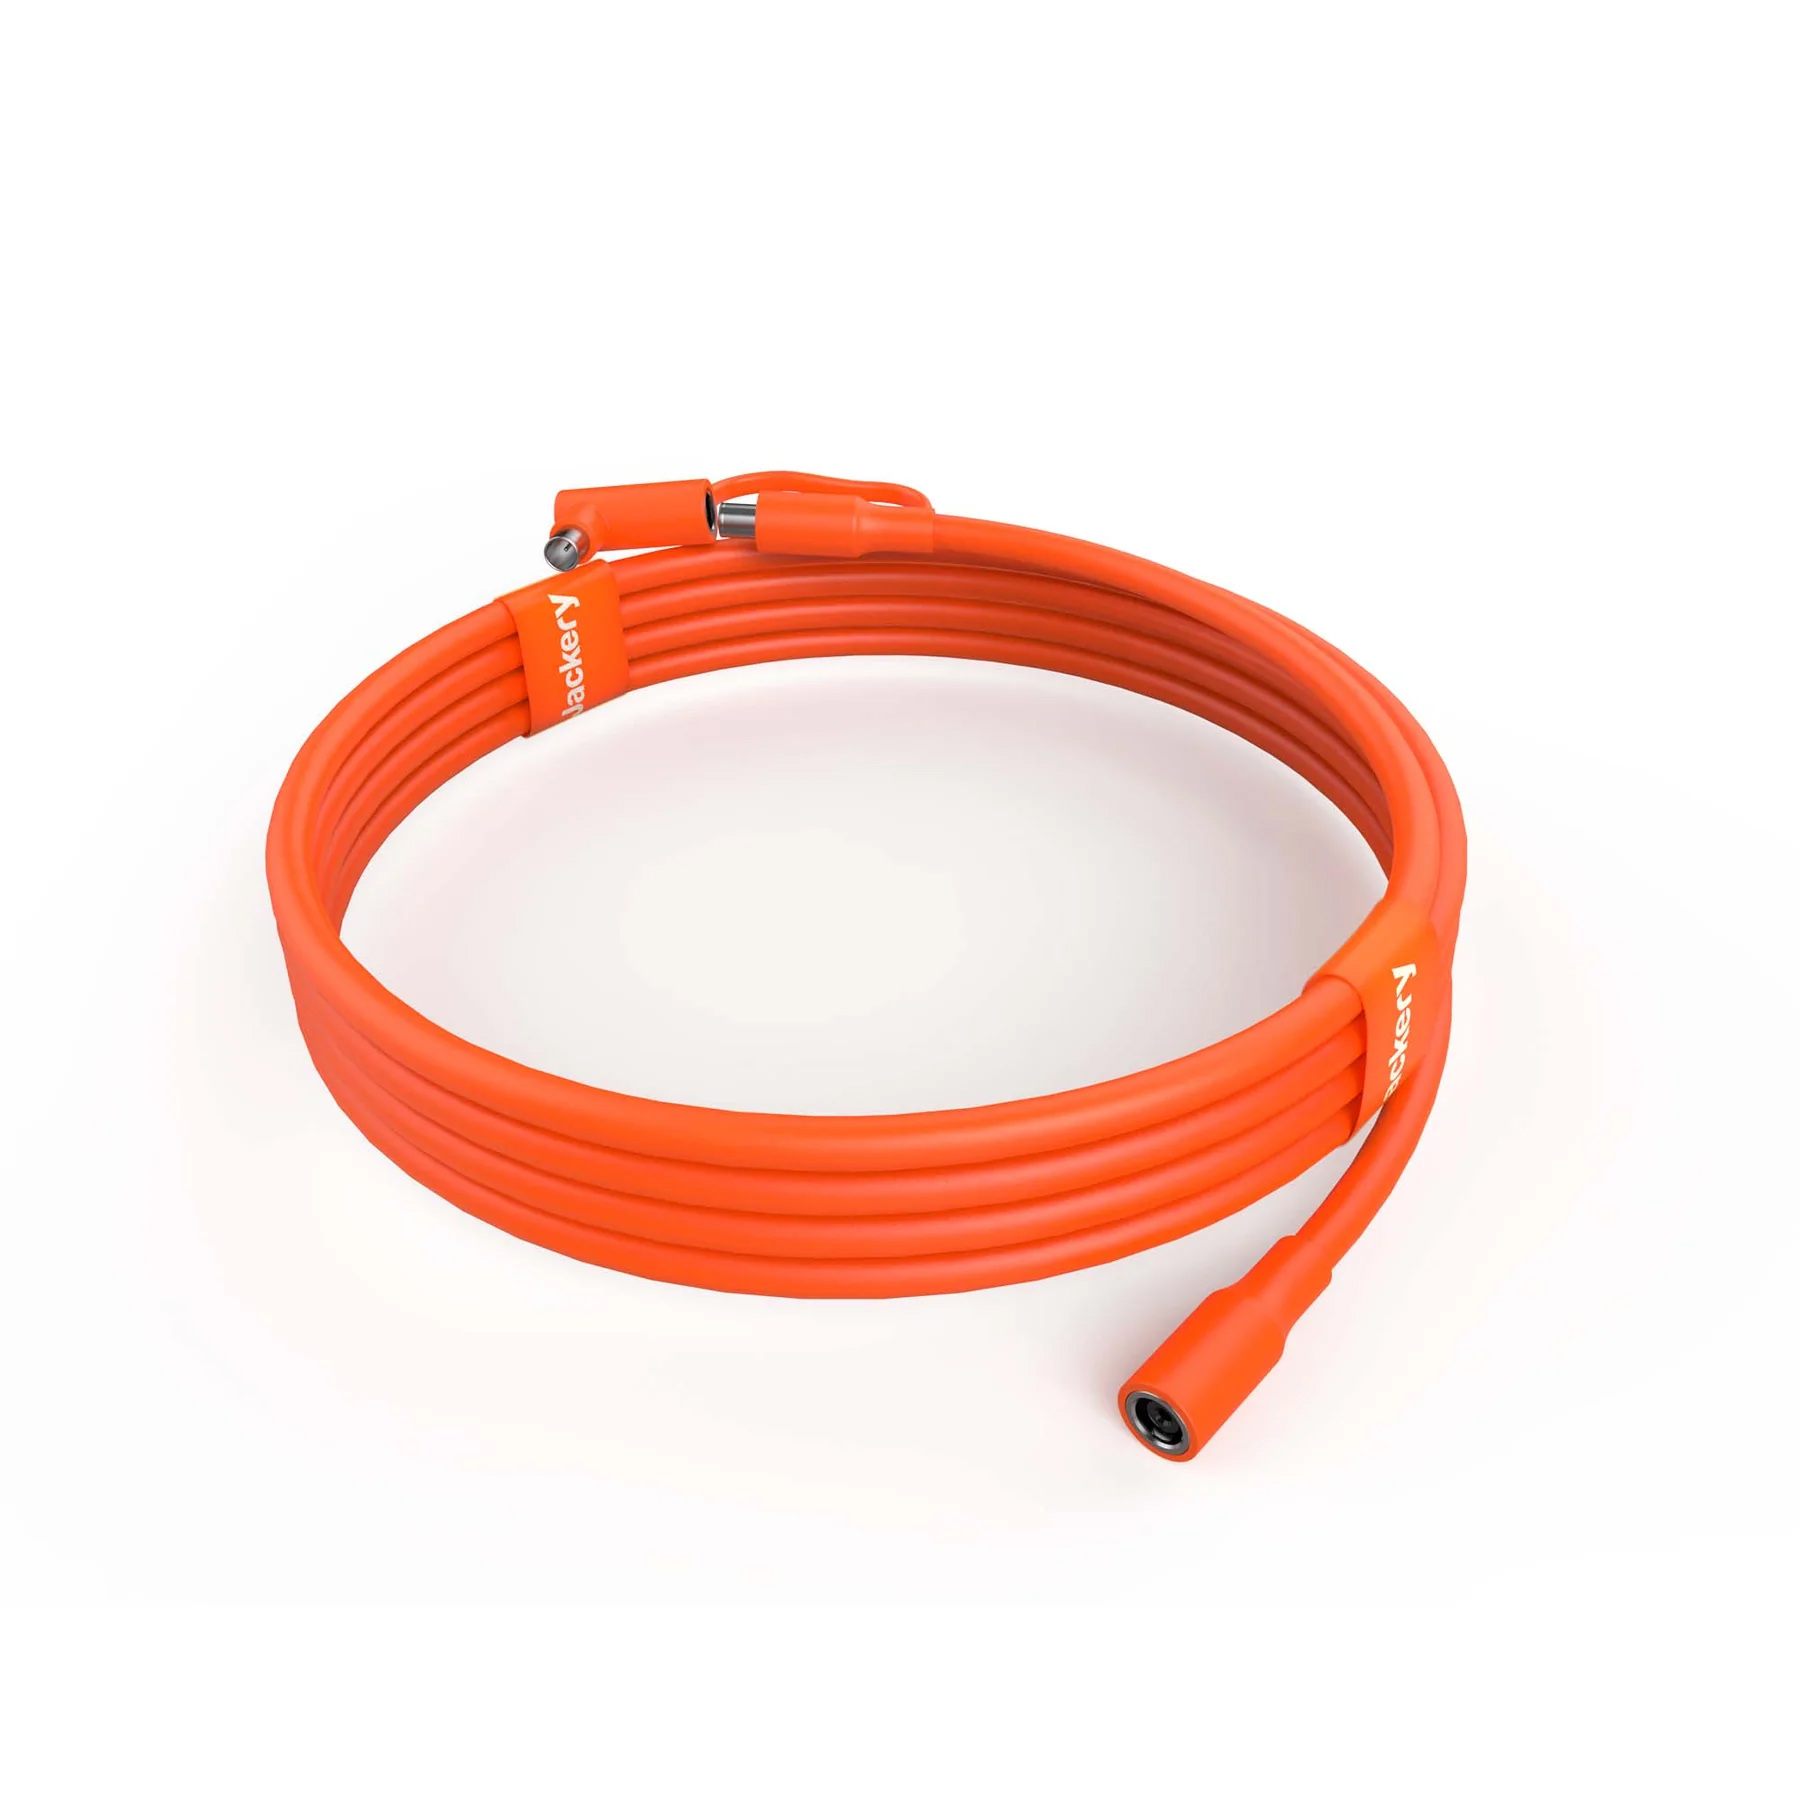 Купить удлиняющий кабель Jackery Solar DC Cable 5m в Луцке